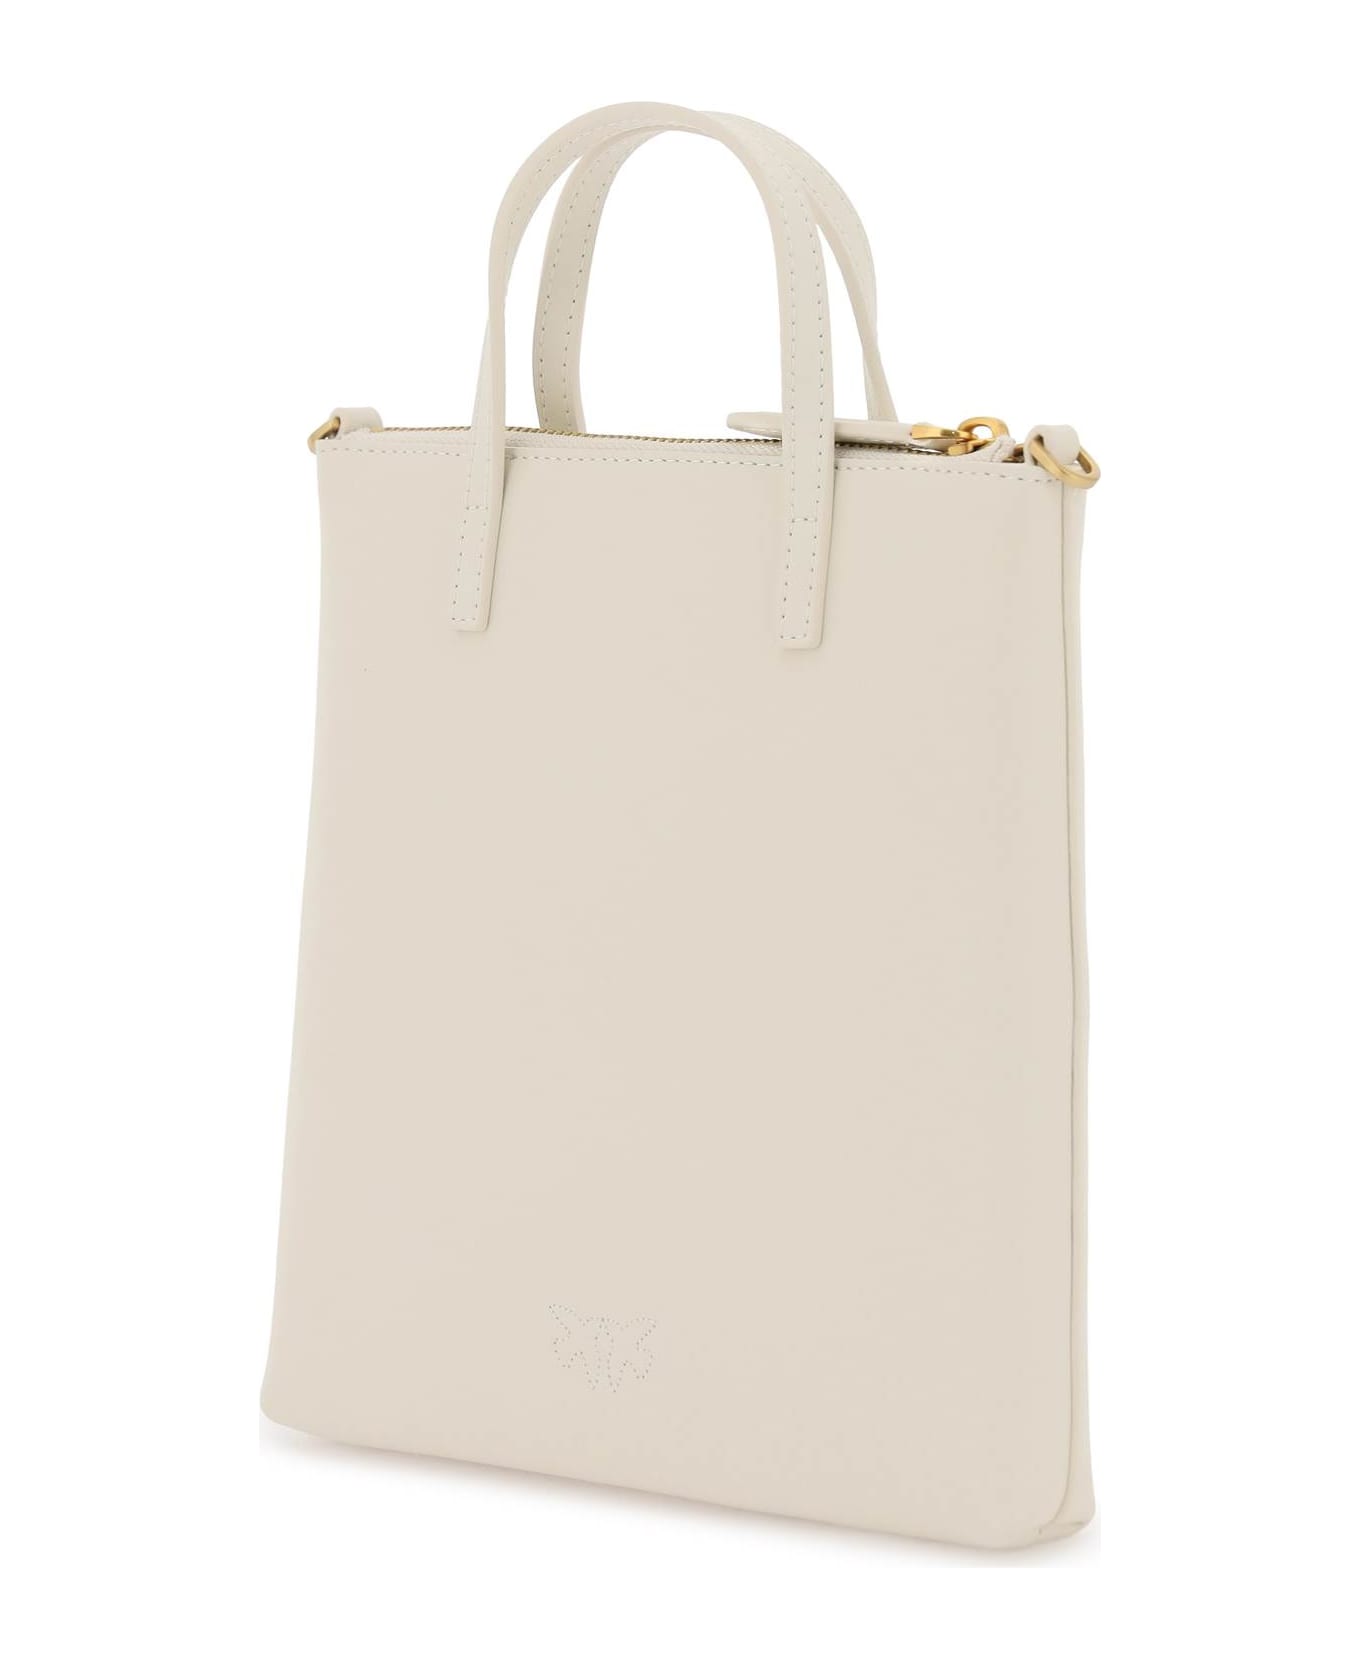 Pinko Leather Mini Tote Bag - BIANCO SETA ANTIQUE GOLD (White)